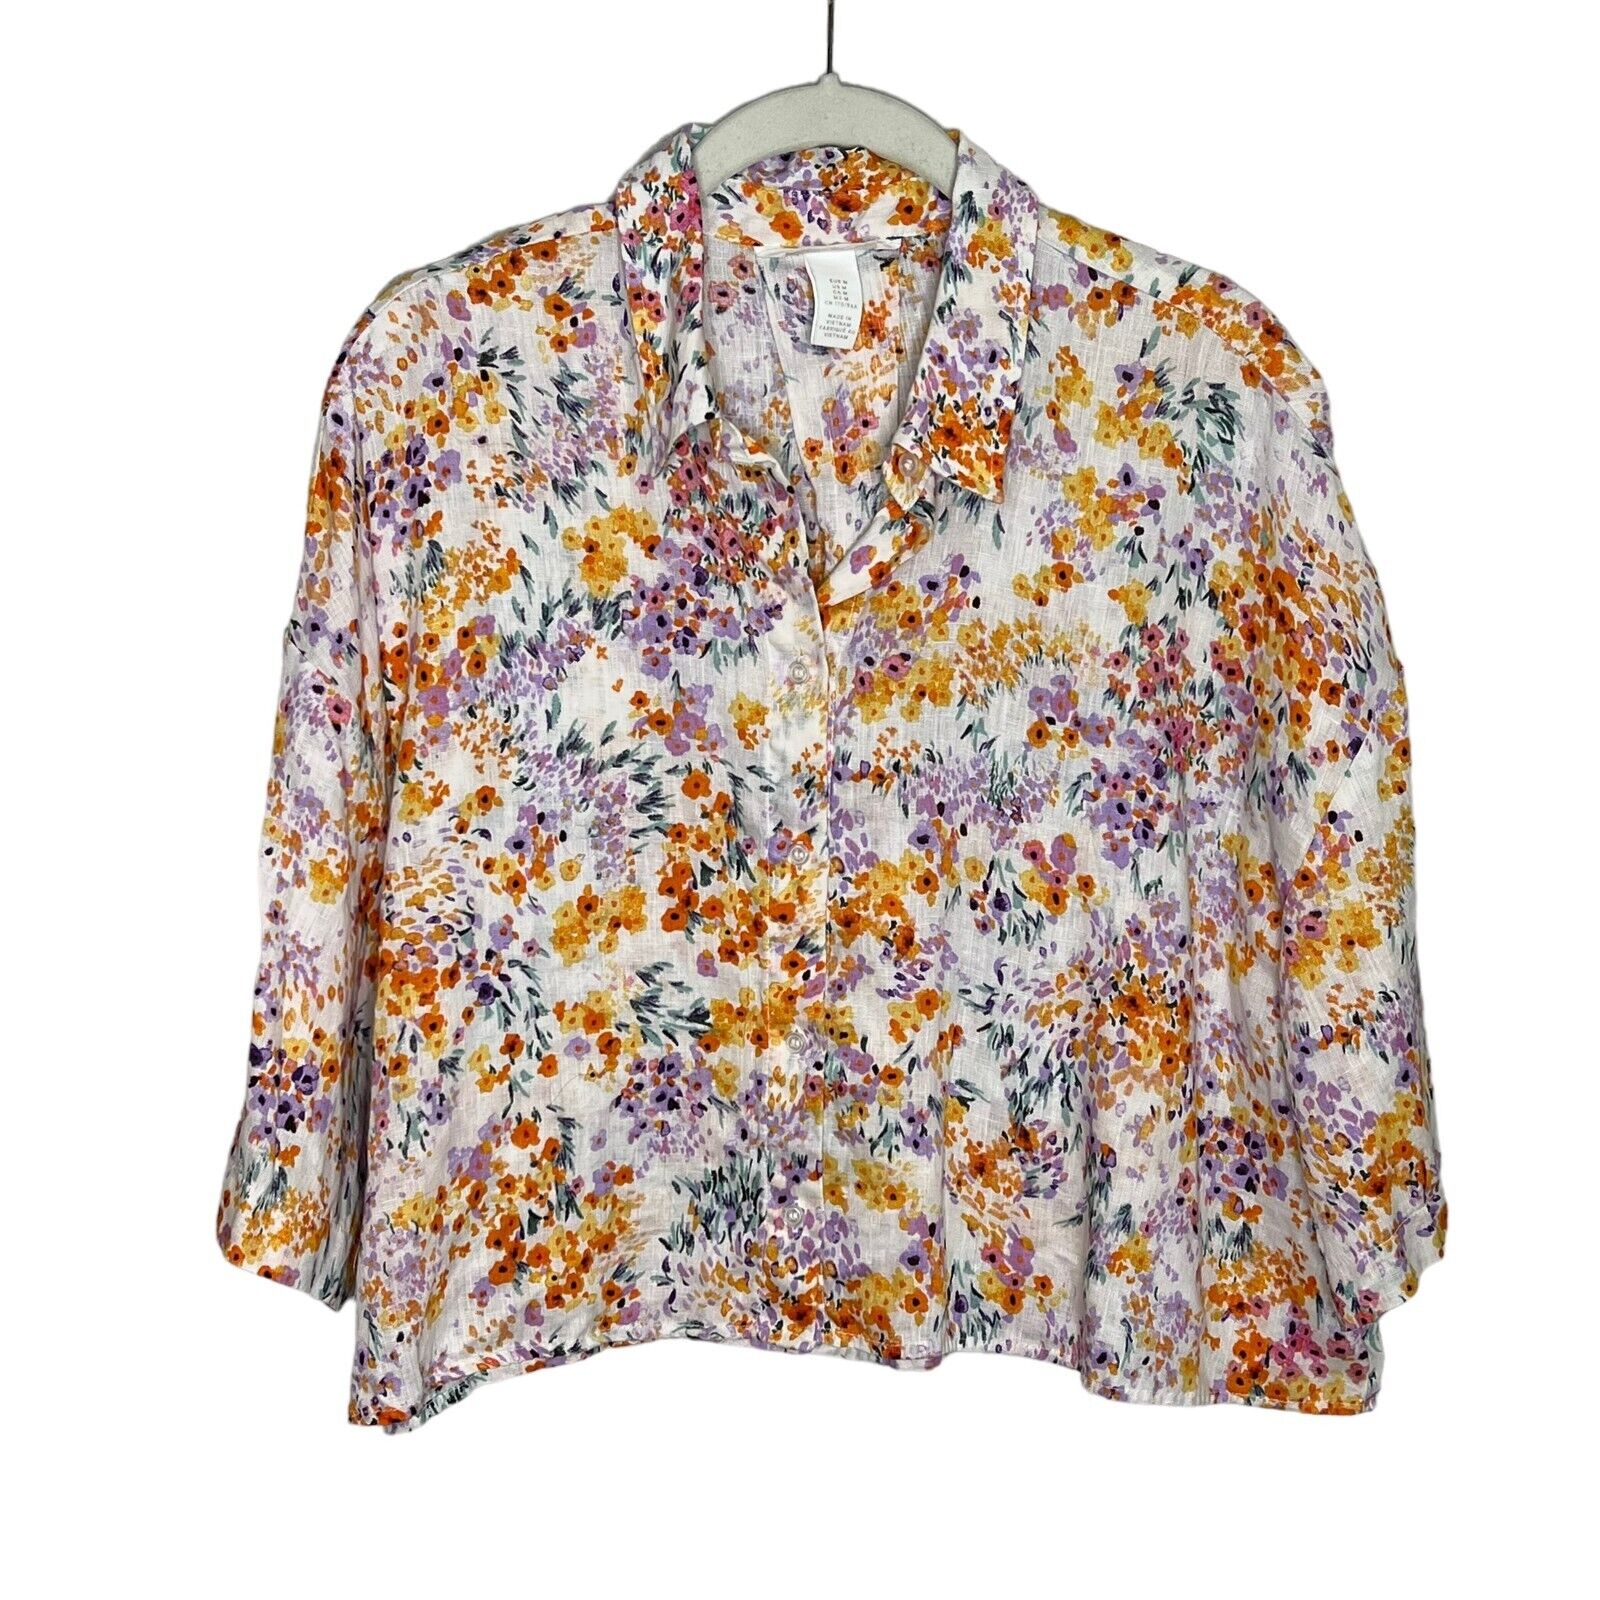 H&M Women's Floral Short Sleeve Button Cropped Linen Shirt Size Medium